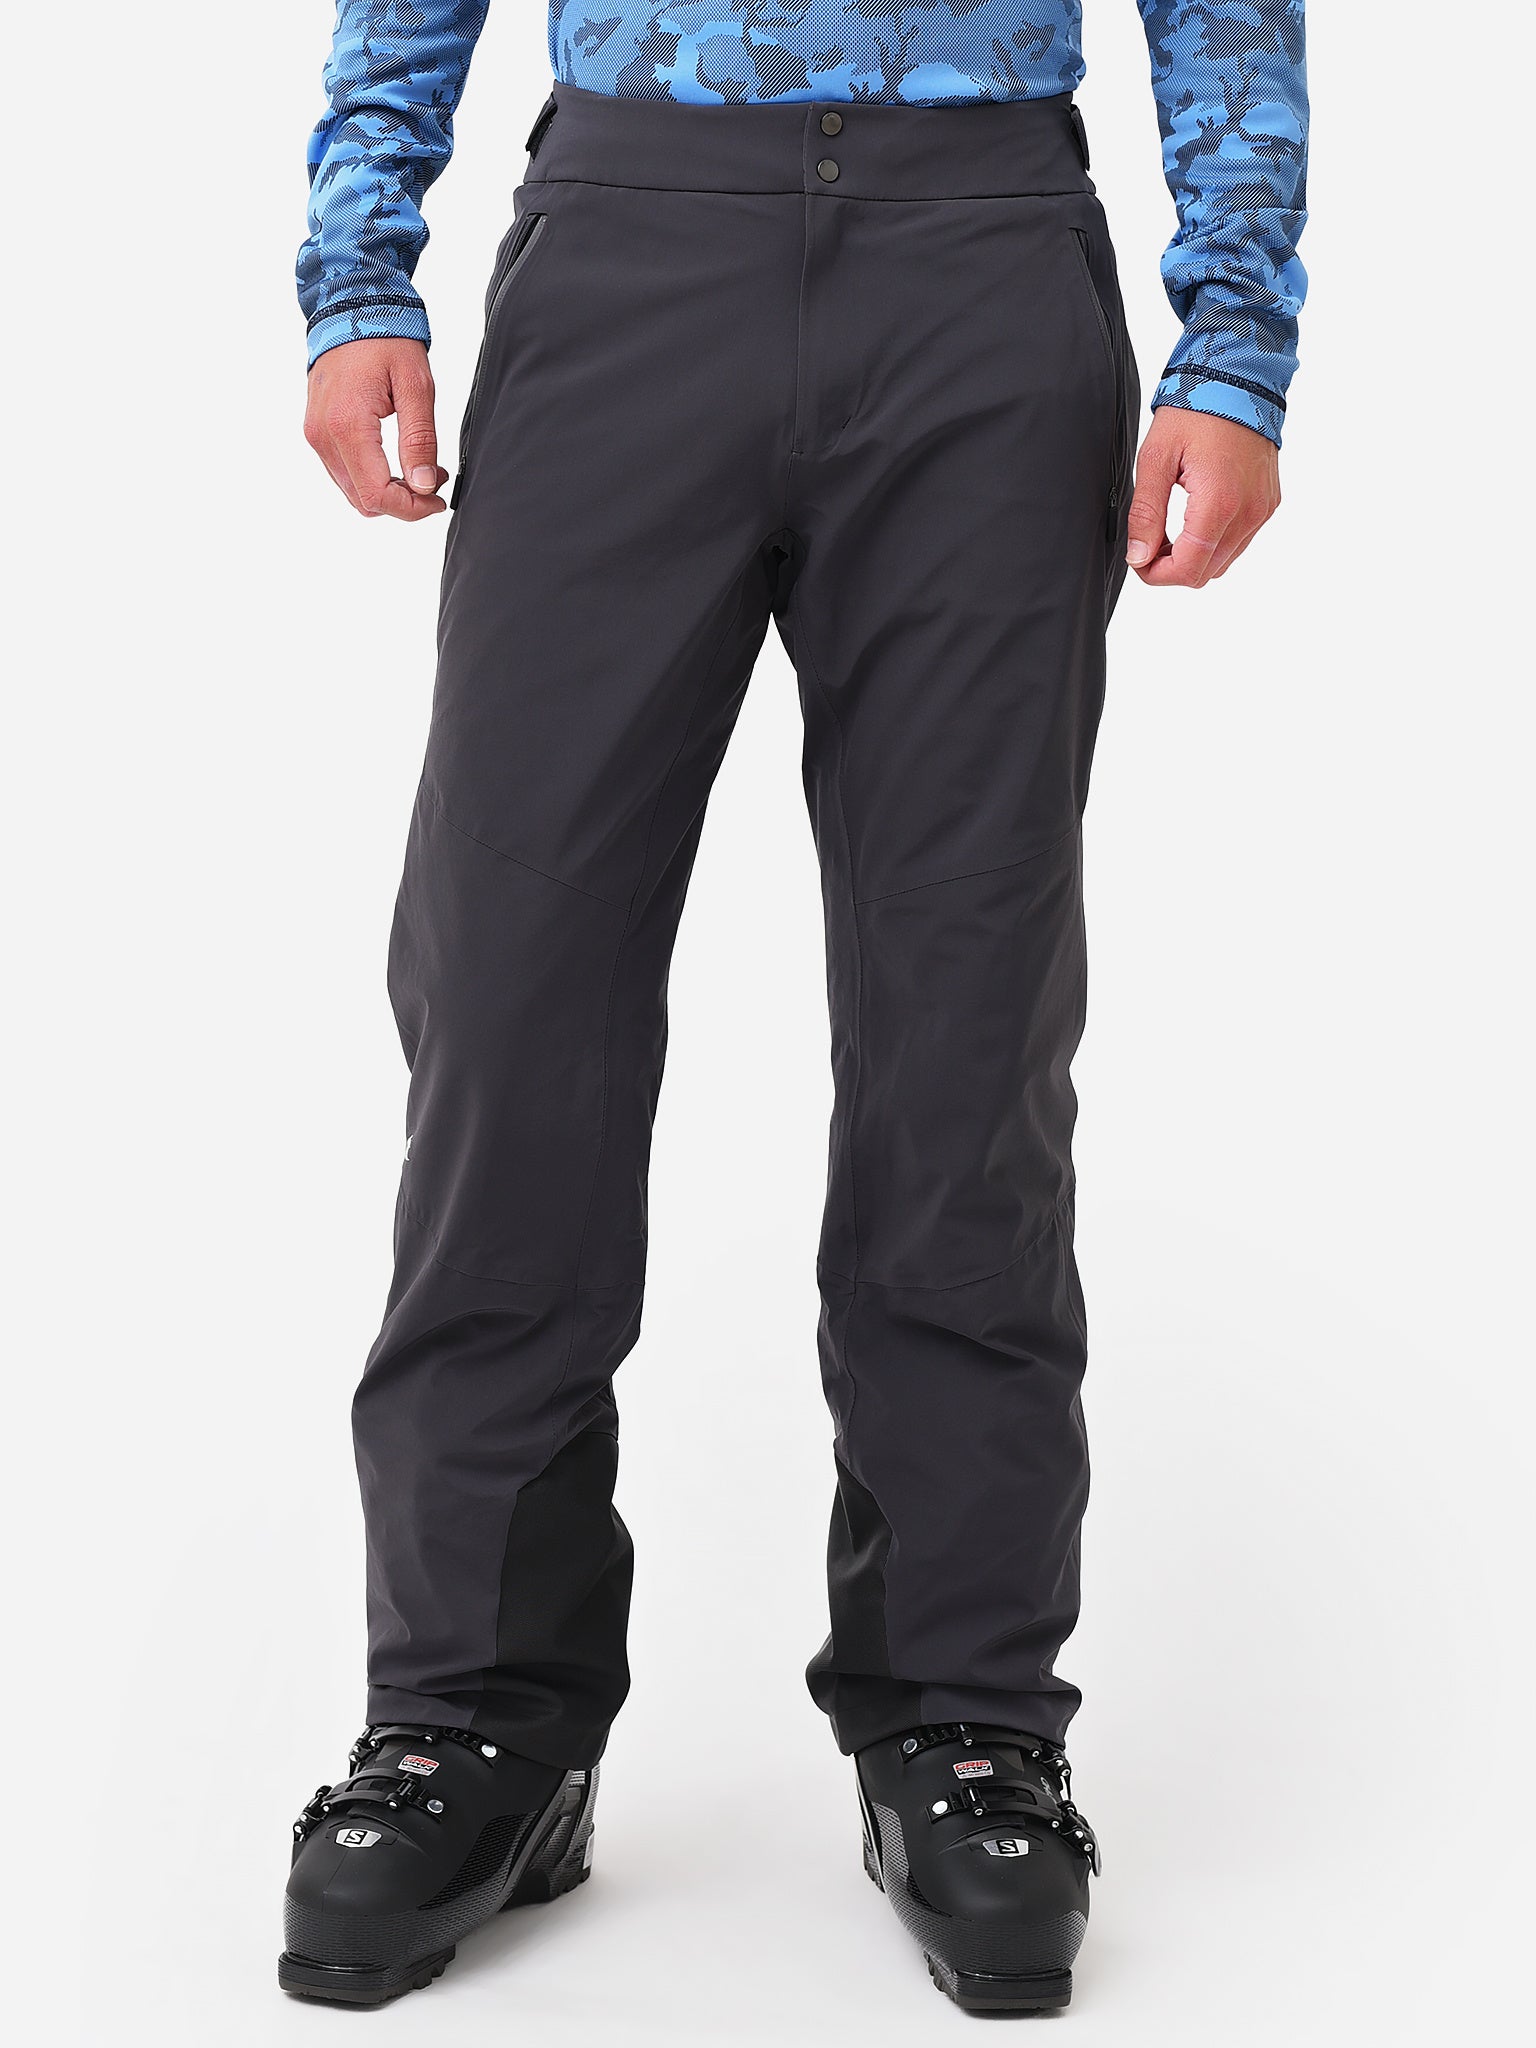 KJUS Men's Formula Ski Pants - Size 50 Medium (US 34) - Atlanta Blue - NEW